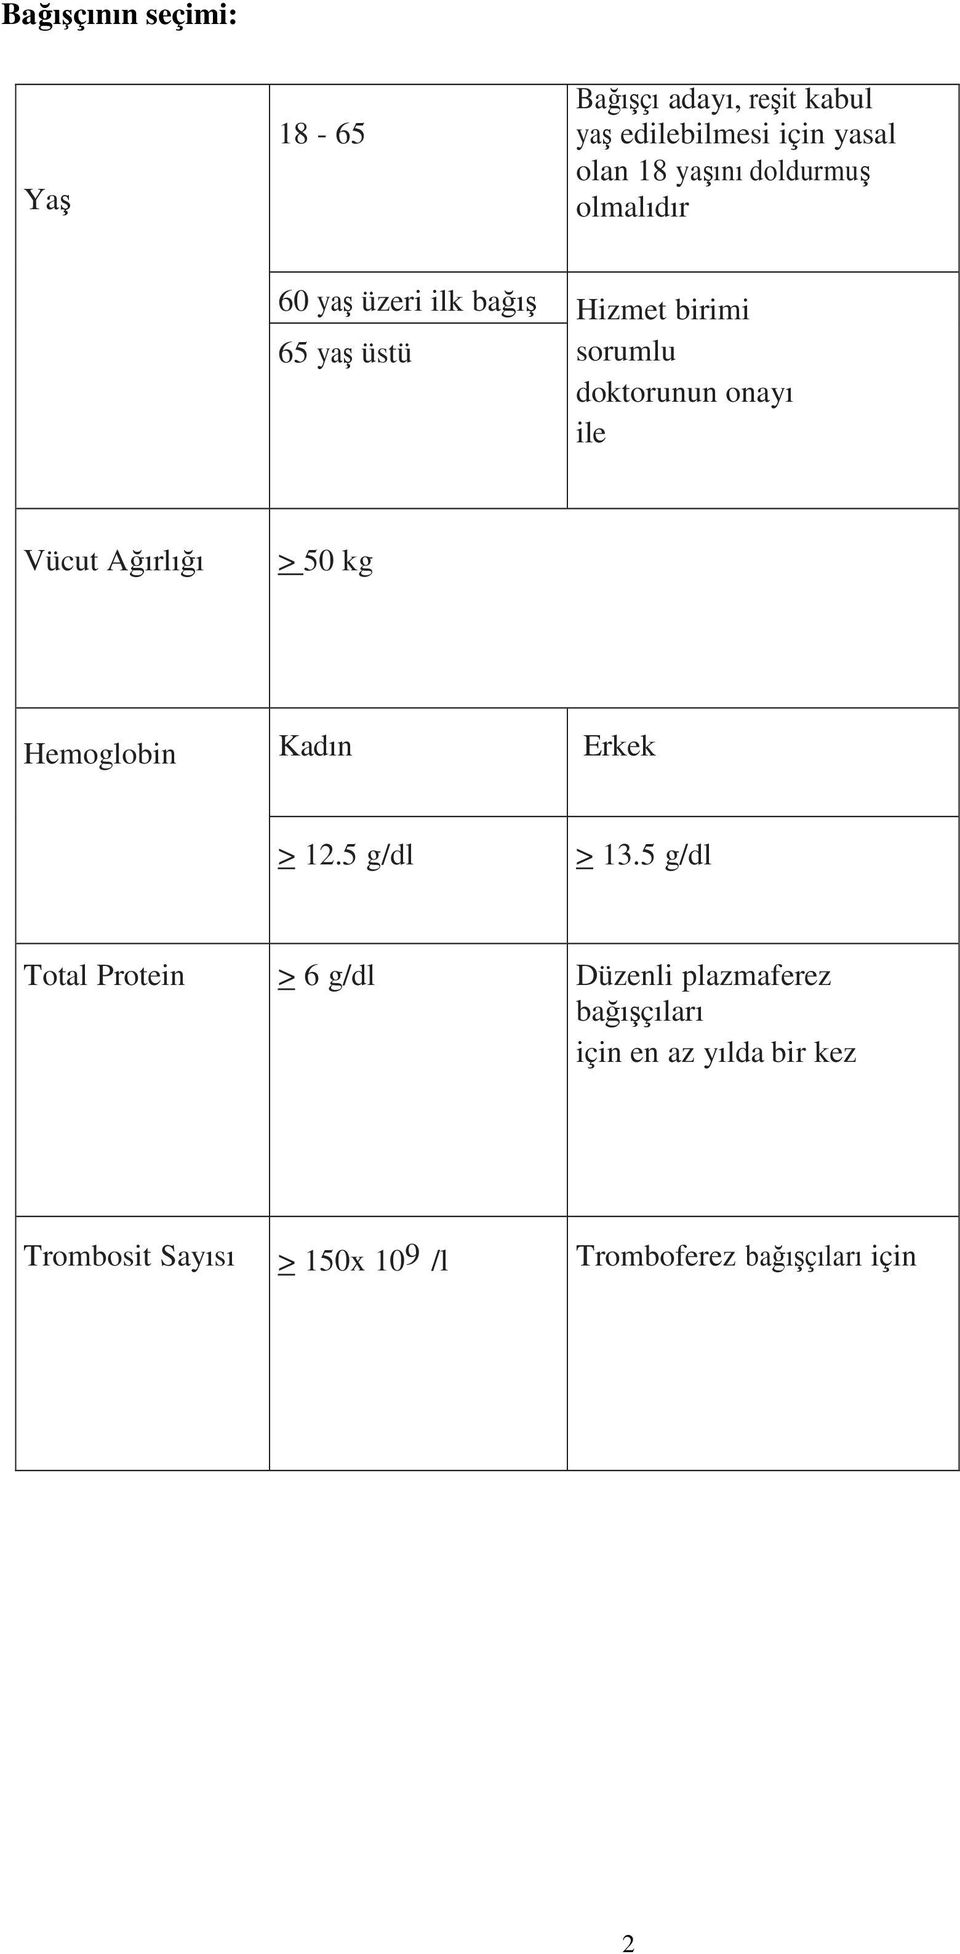 Vücut Ağırlığı > 50 kg Hemoglobin Kadın Erkek > 12.5 g/dl > 13.